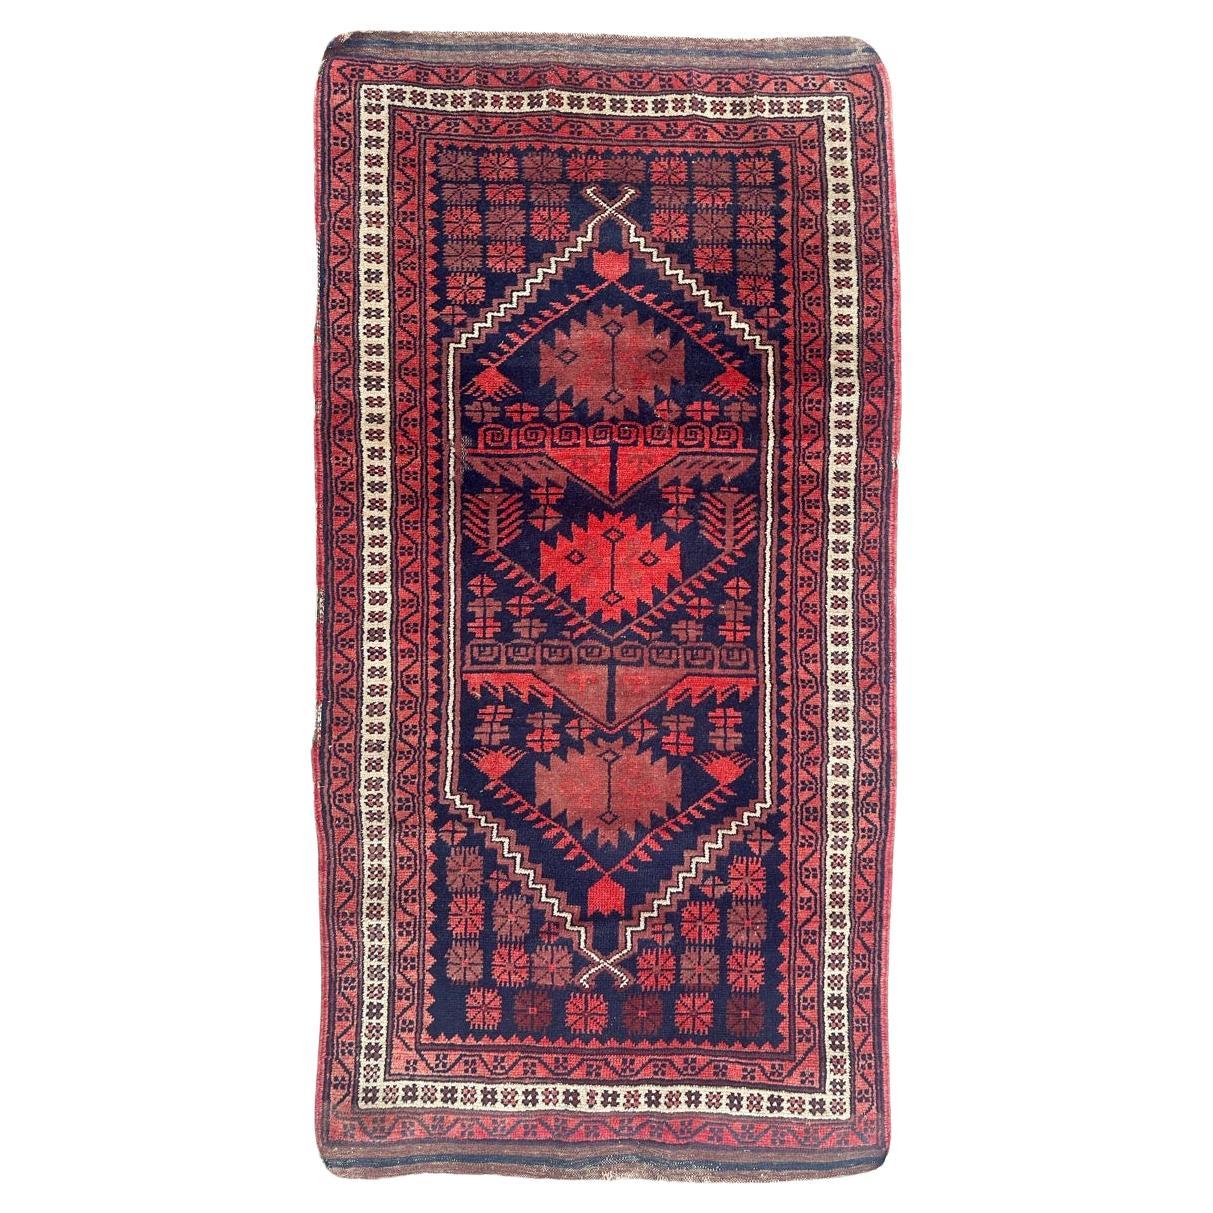 Bobyrug’s nice vintage Turkish rug 